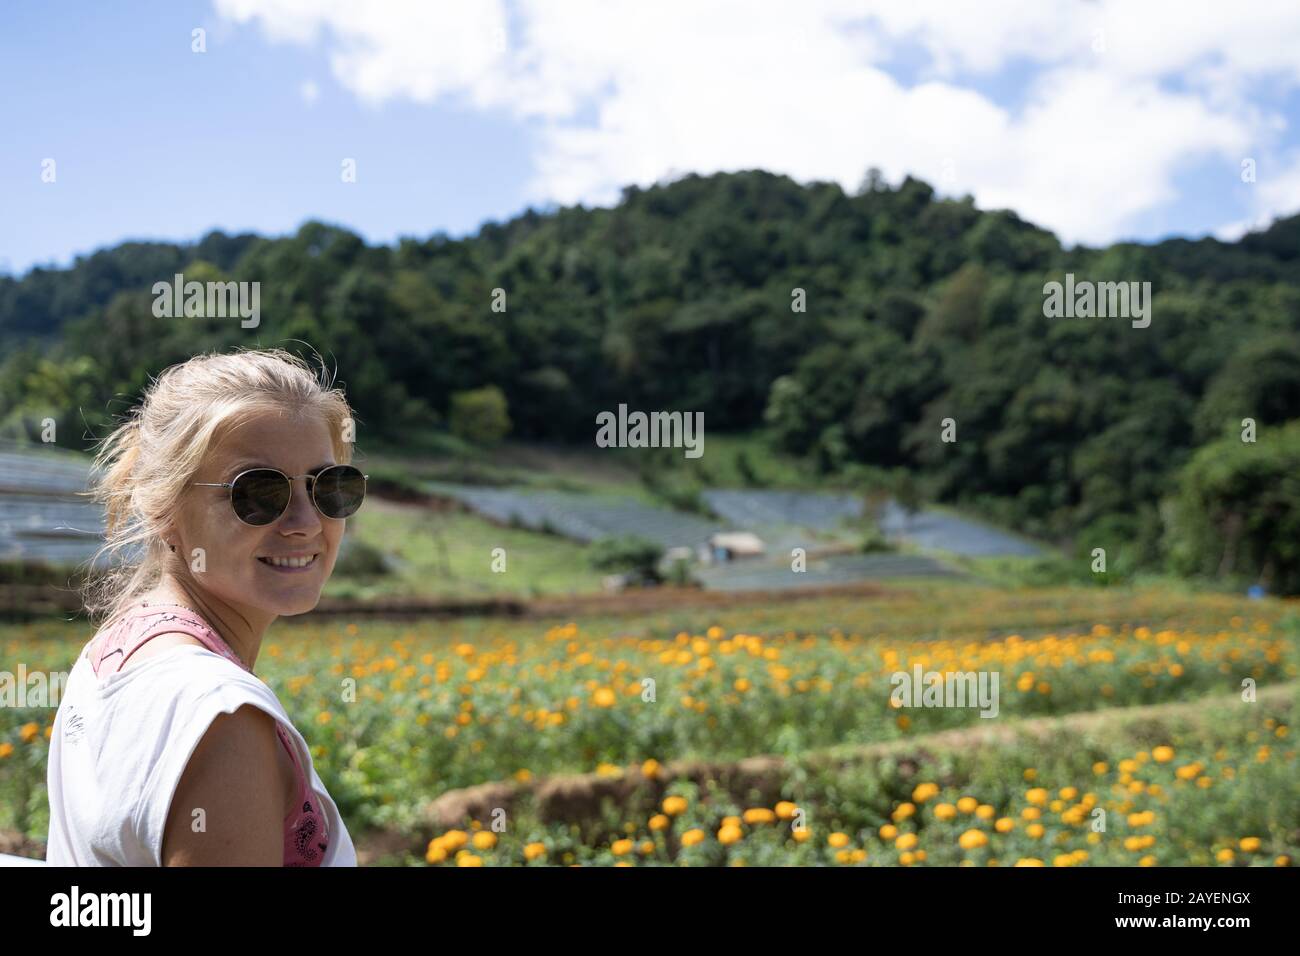 Blondes Mädchen mit Sonnenbrille vor einem Feld gelber Nelken und anderen terrassenförmigen Plantagen mitten im Wald in Thailand Stockfoto